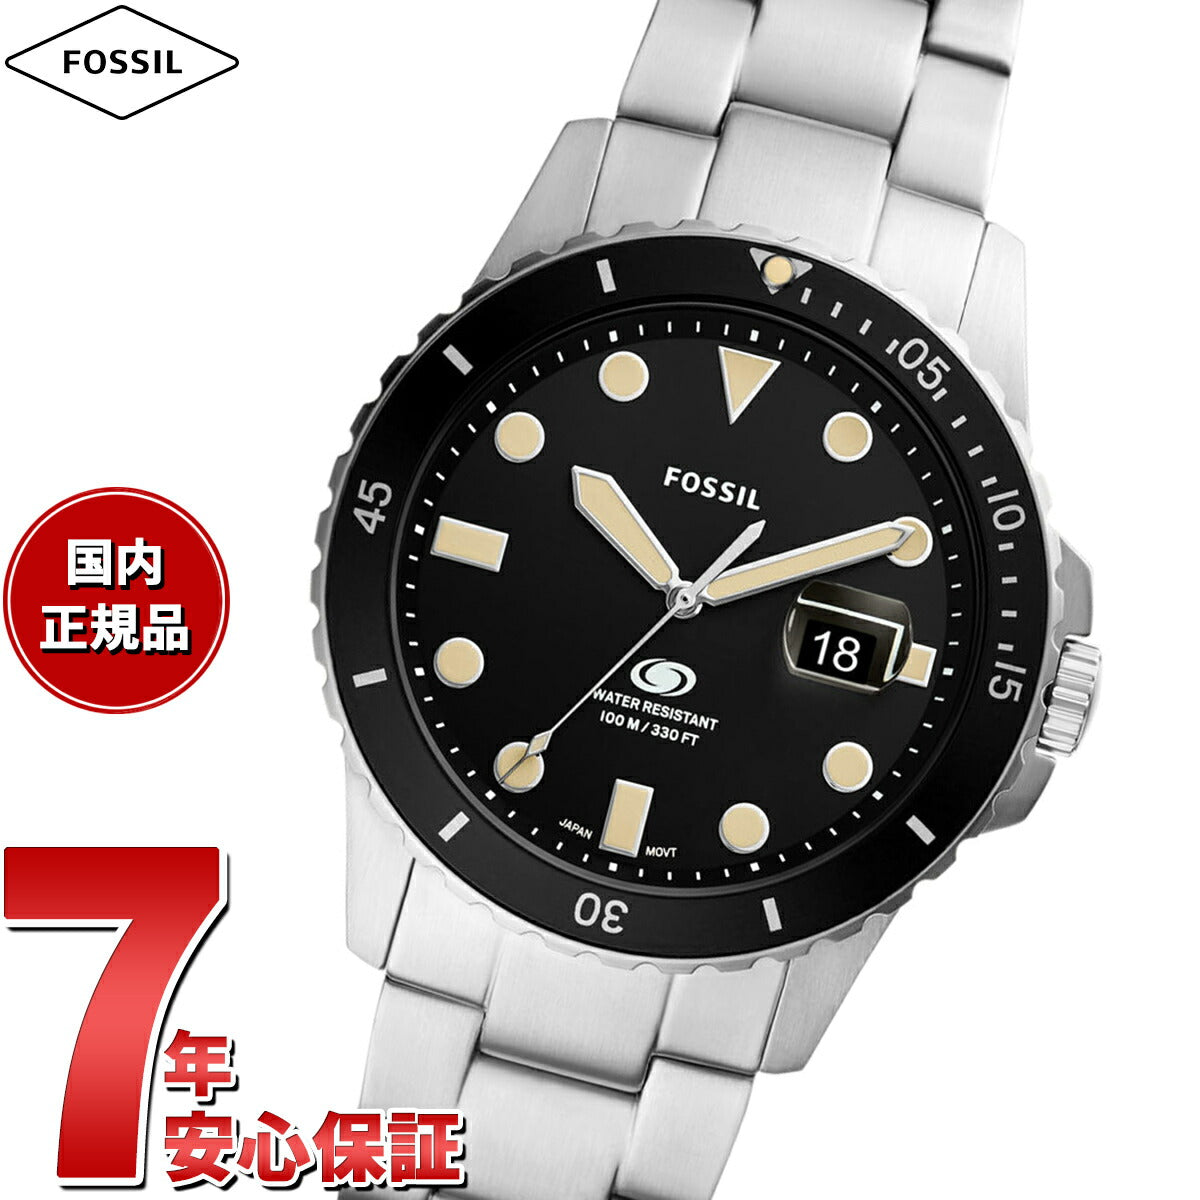 訳あり フォッシル 腕時計 FS5384 クオーツ ブラック メンズ FOSSIL [0604]